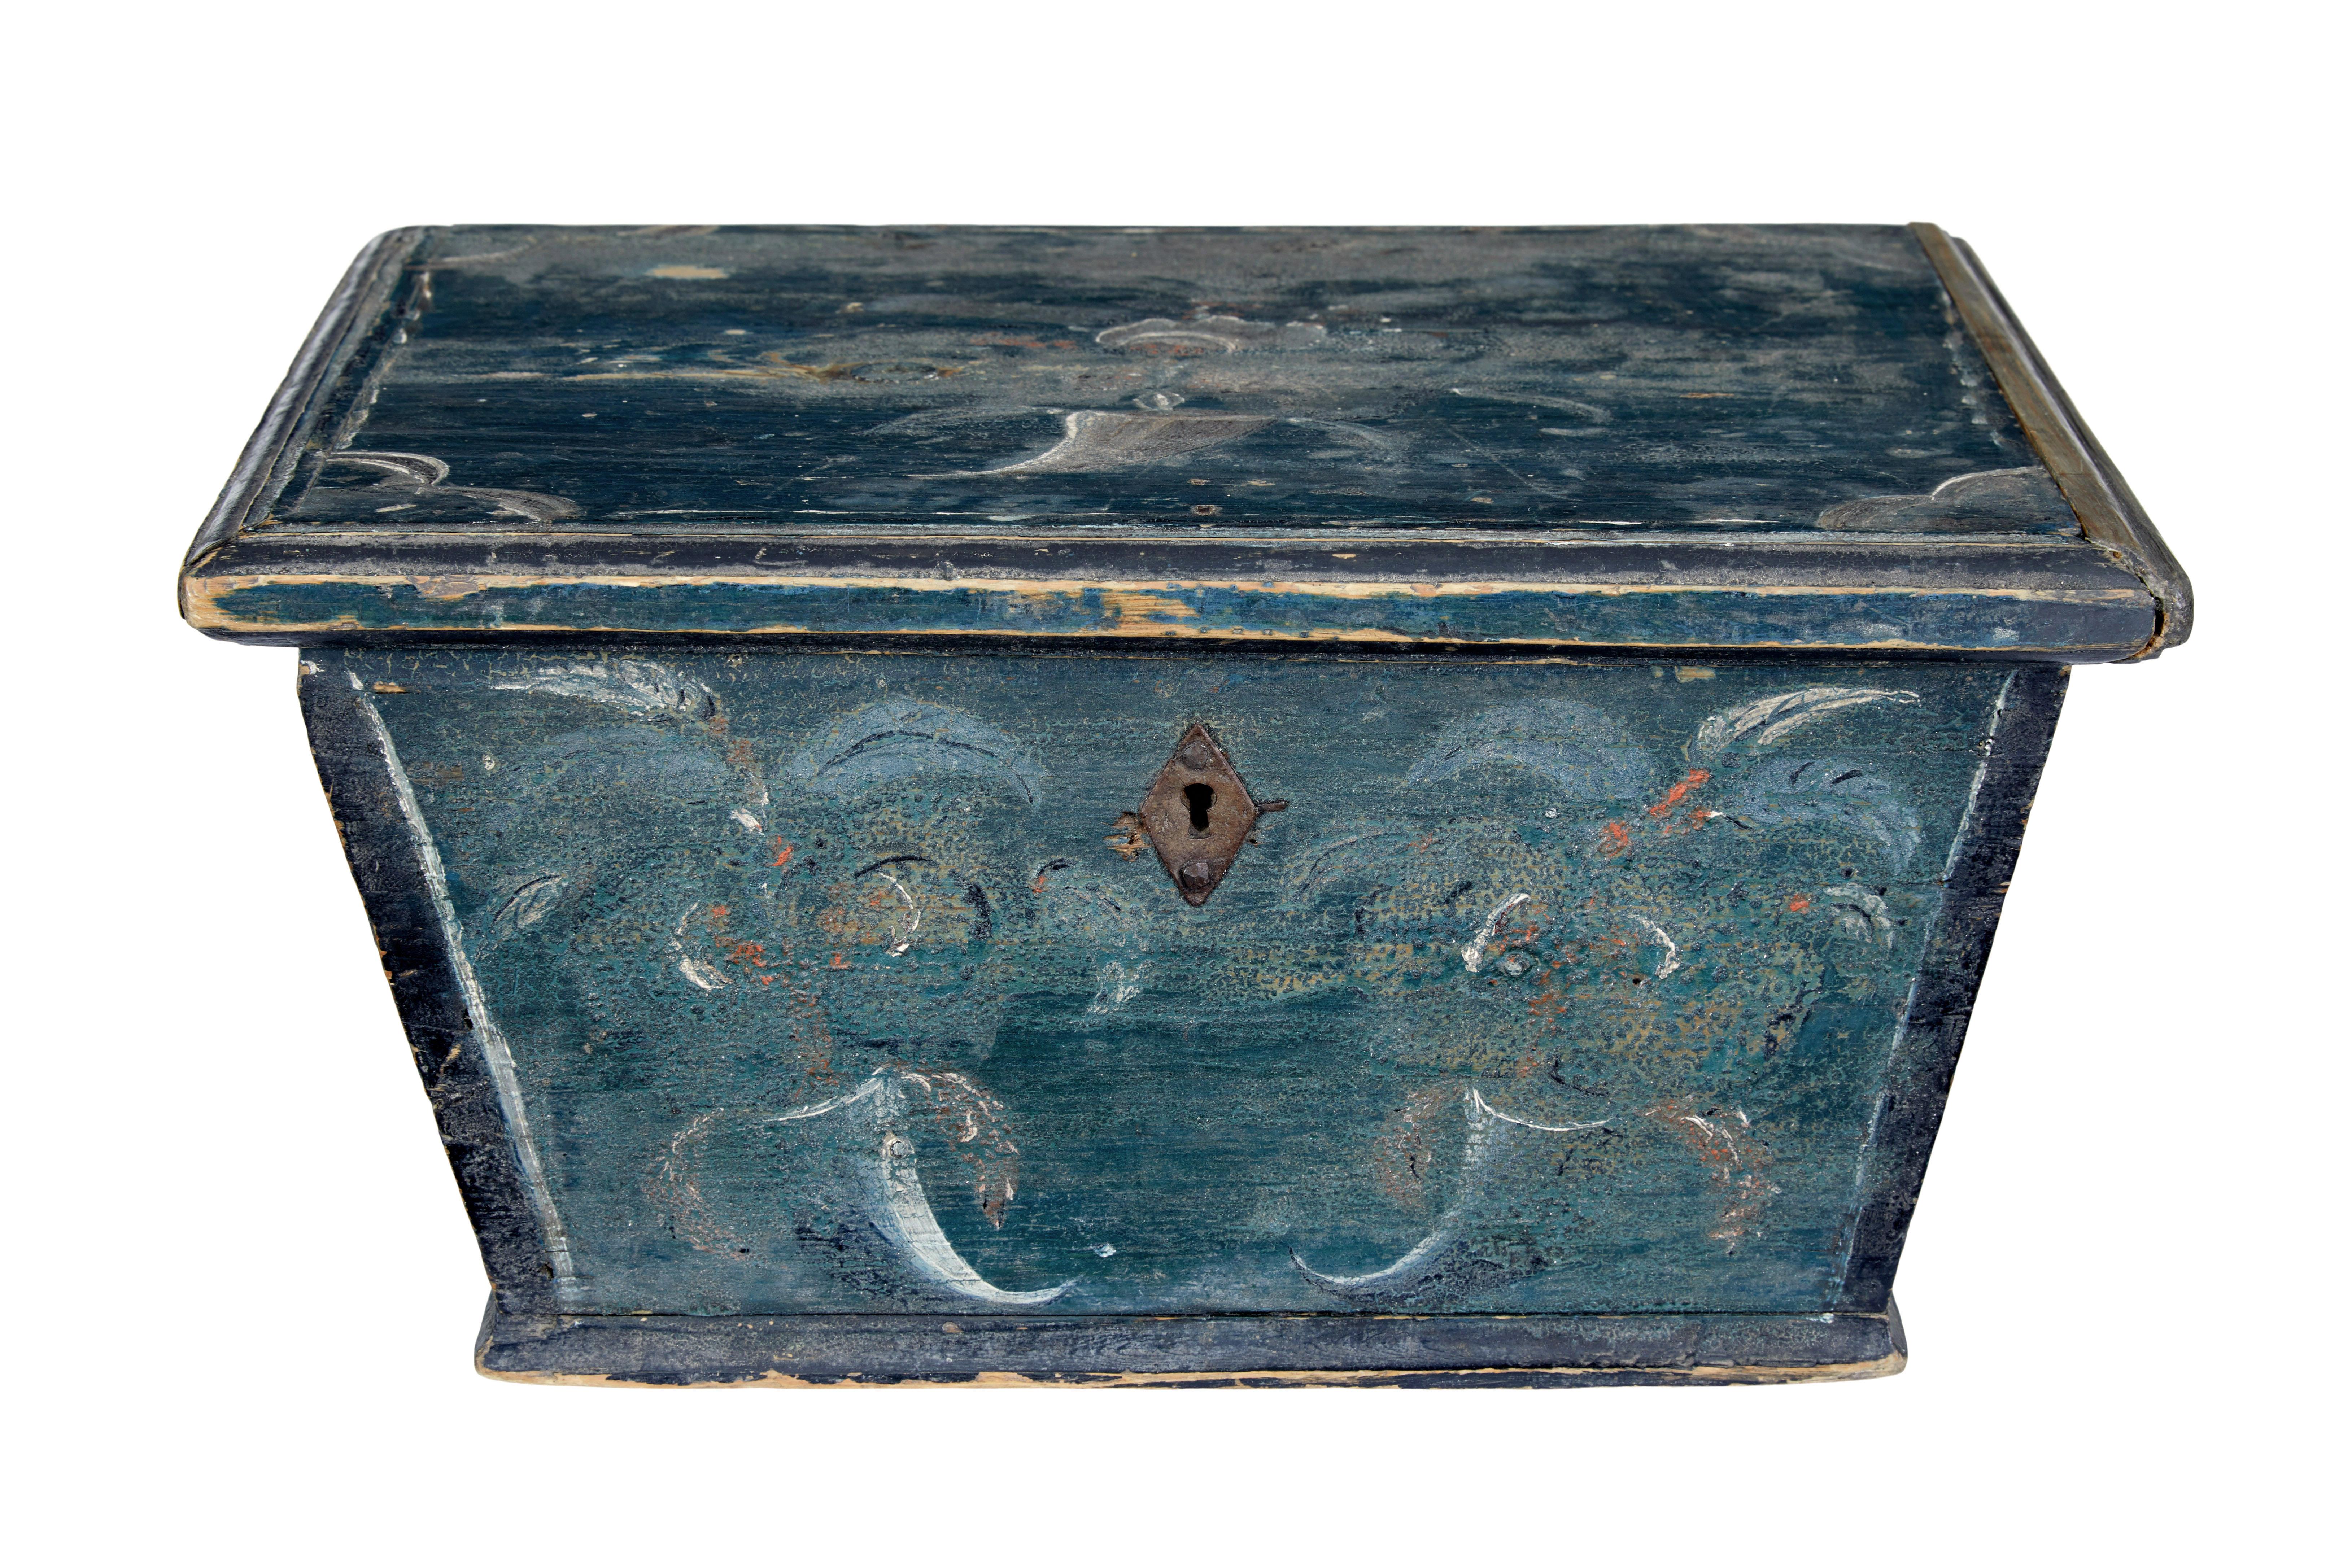 Petite boîte sarcophage originale peinte du 19e siècle, vers 1870.

Belle boîte décorative avec peinture d'origine.   Boîte à couvercle en forme de sarcophage, en peinture d'origine, avec des traces de décoration florale peinte à la main sur chaque